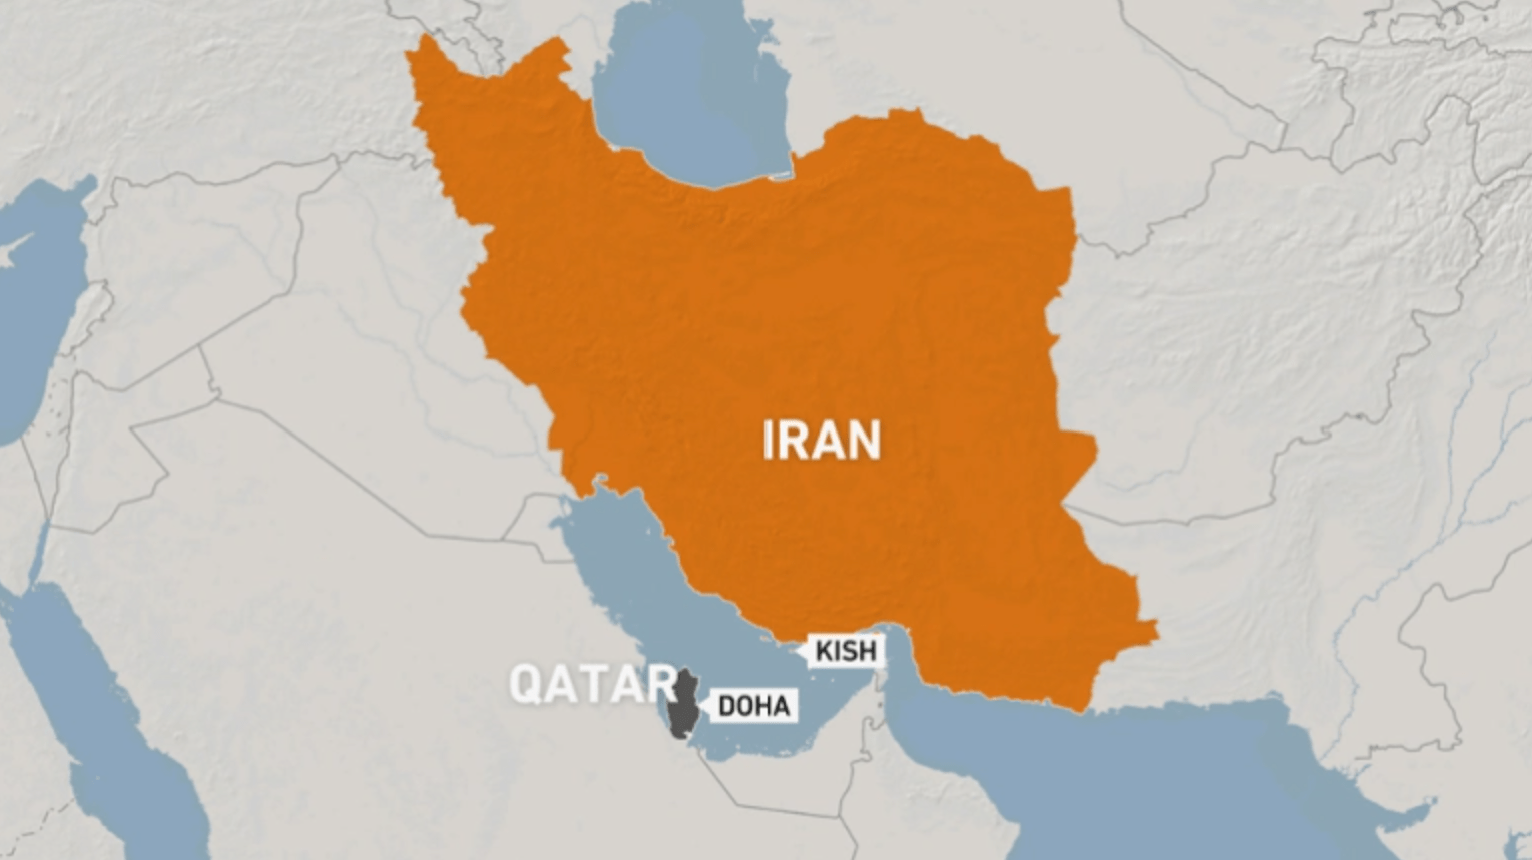 ایران در پی توافقات انجام شده با قطر برای میزبانی از هواداران جام جهانی آماده می شود